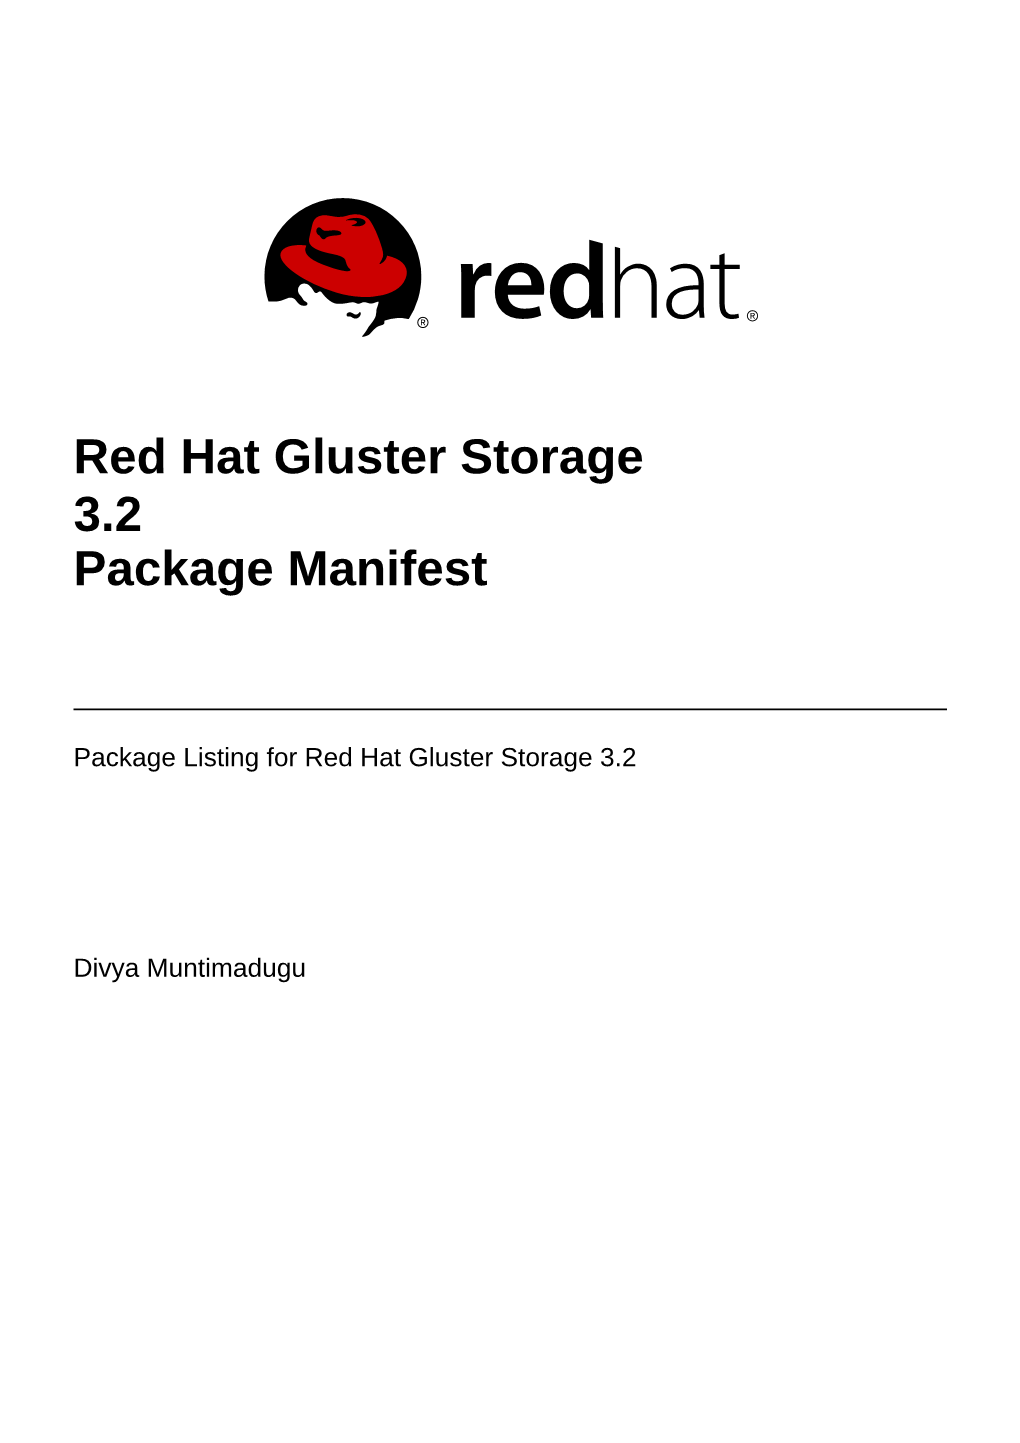 Red Hat Gluster Storage 3.2 Package Manifest